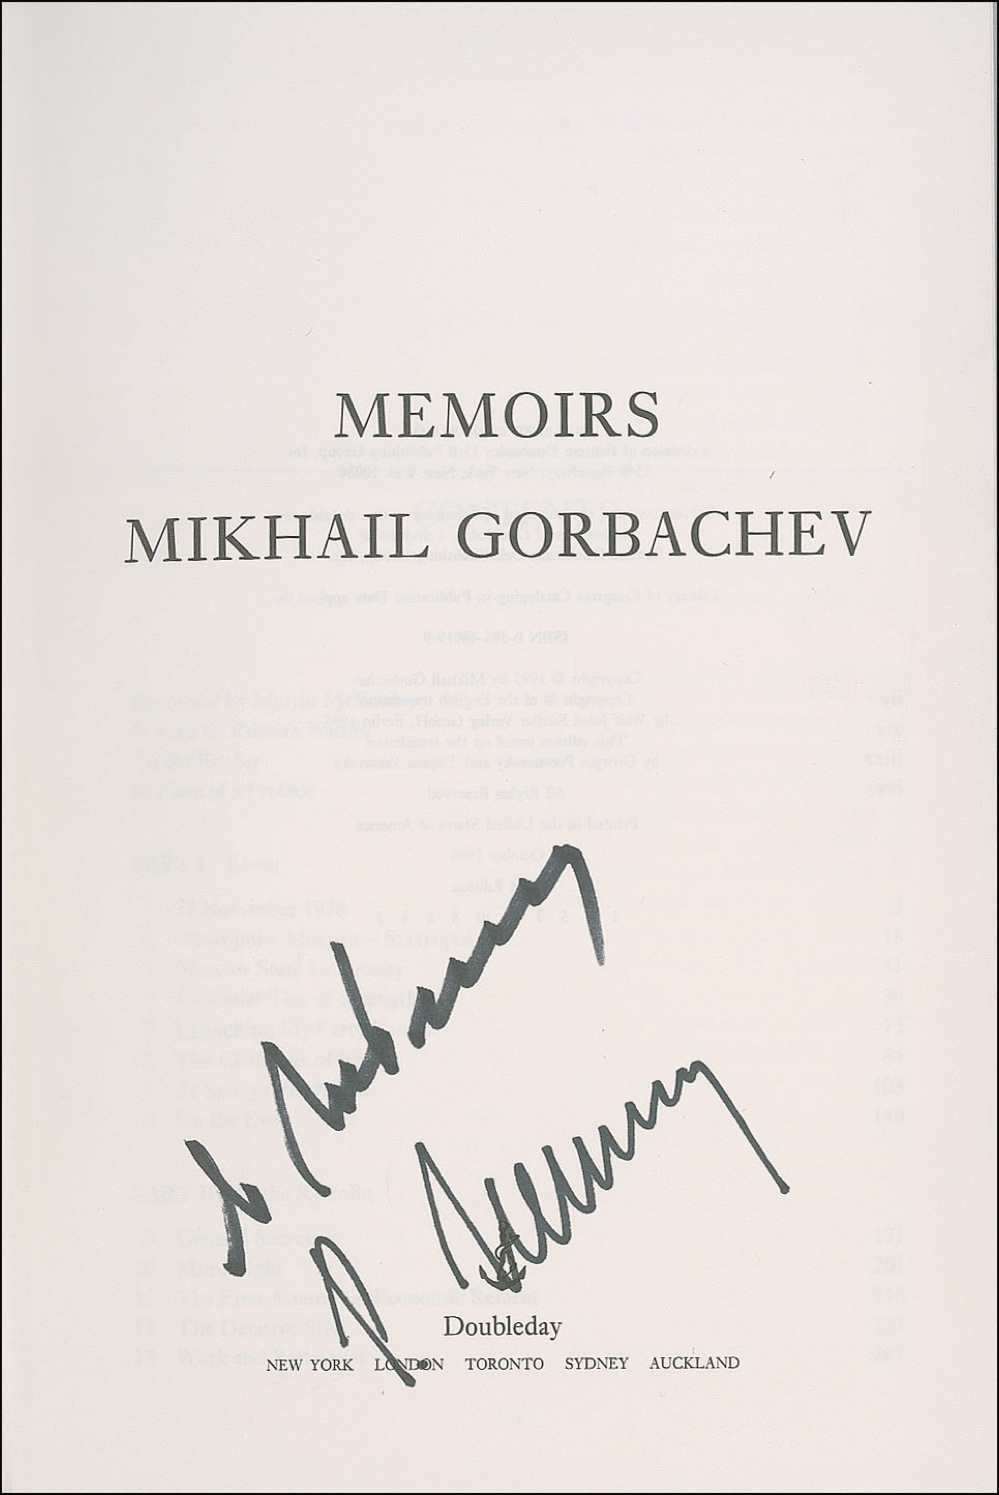 Lot #222 Mikhail Gorbachev